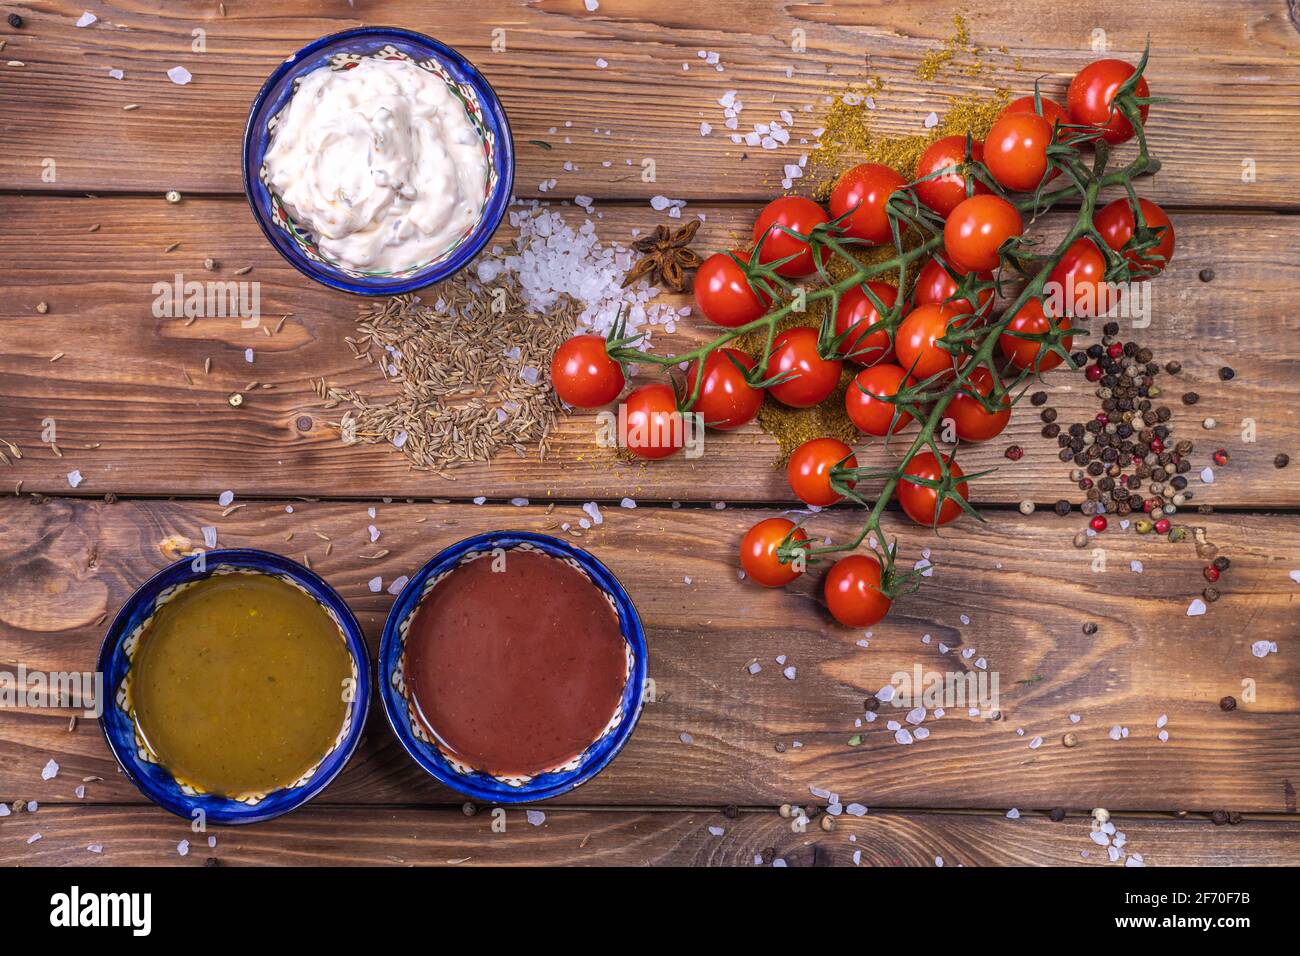 Sauce dans l'assortiment sur fond de bois brun, décorée de poivre, de tomates cerises, d'épices, de gros sel. Menu du restaurant. Banque D'Images